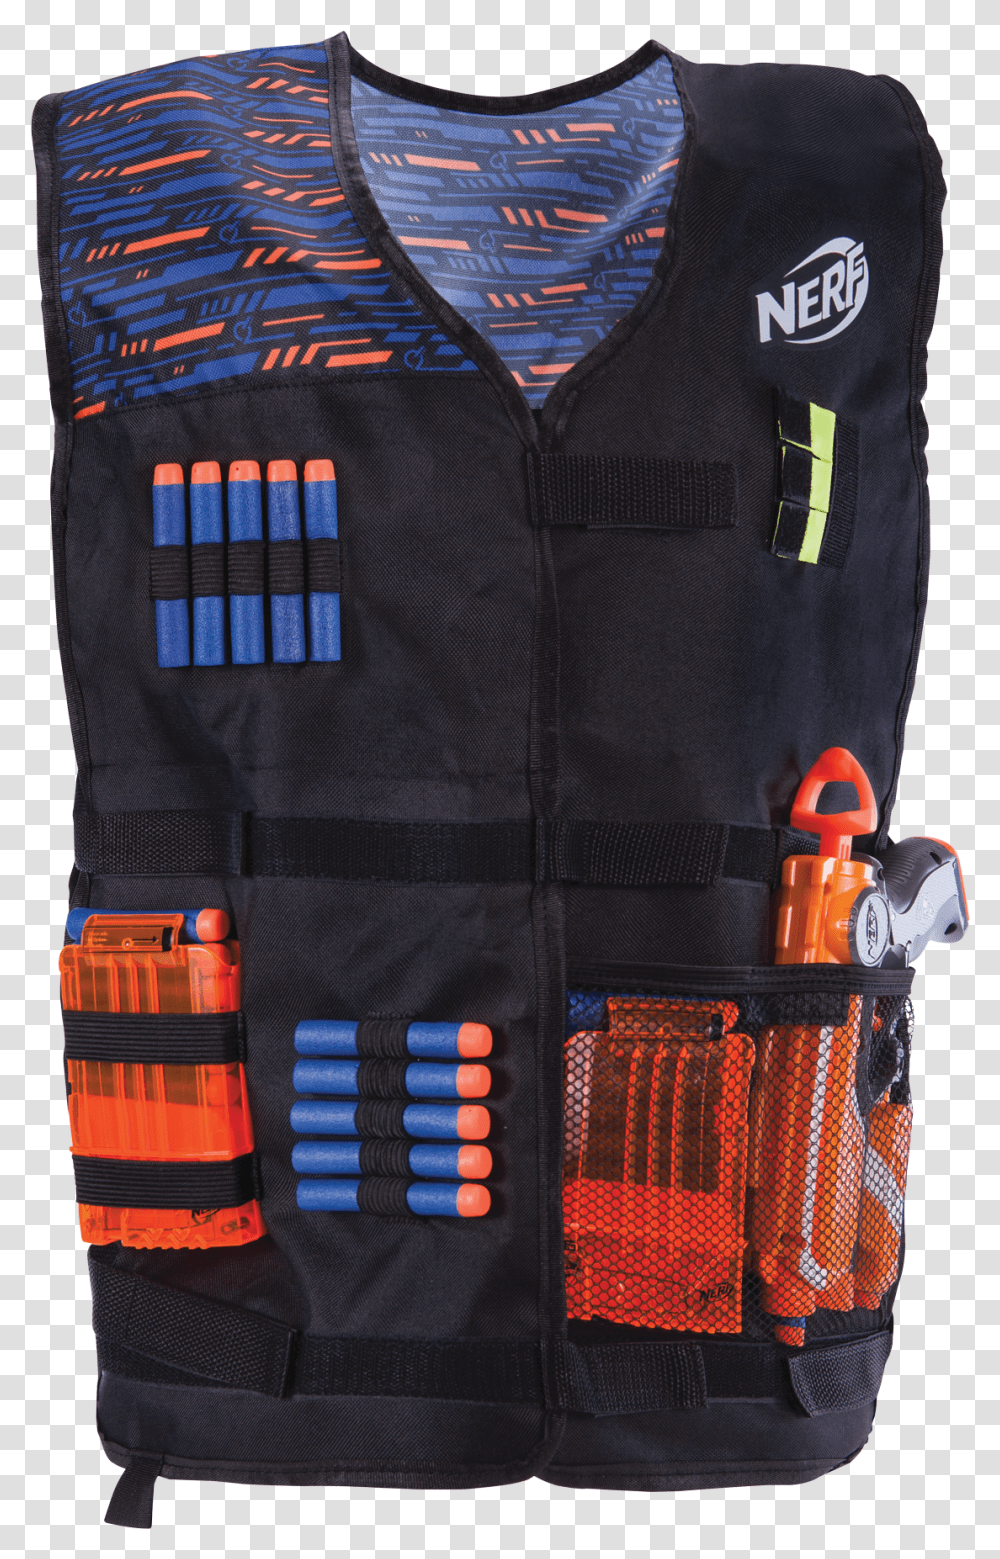 New Nerf Gun Vest, Apparel, Lifejacket Transparent Png